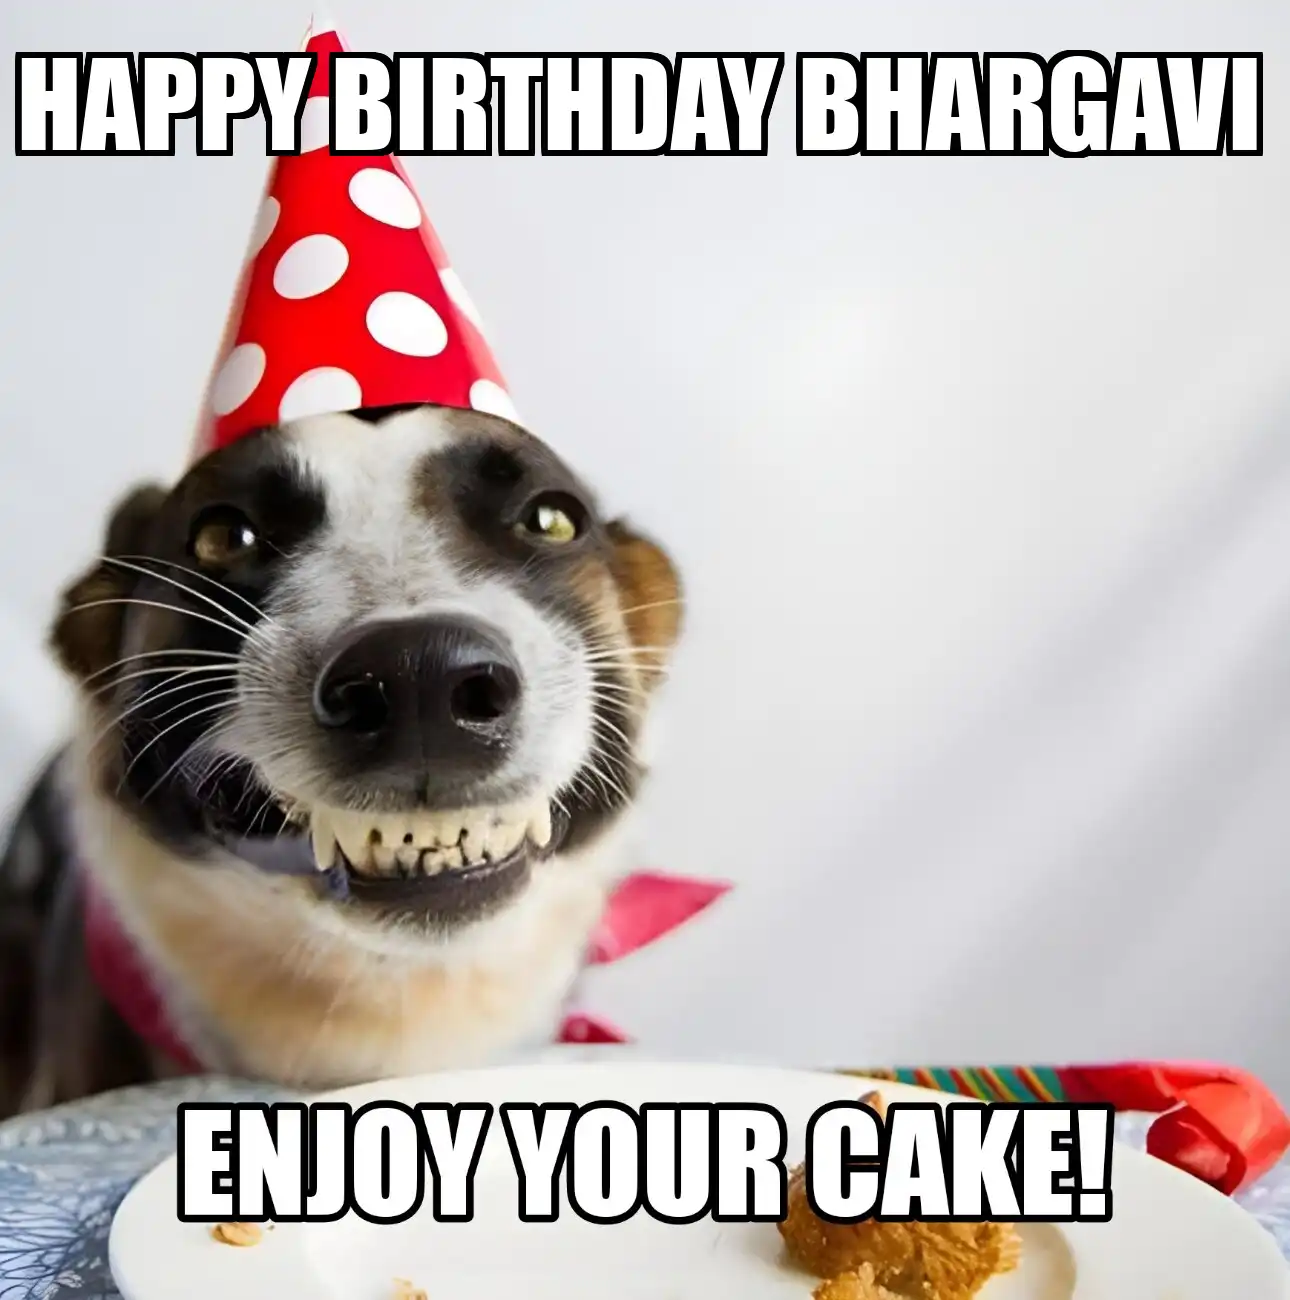 Happy Birthday Bhargavi Enjoy Your Cake Dog Meme